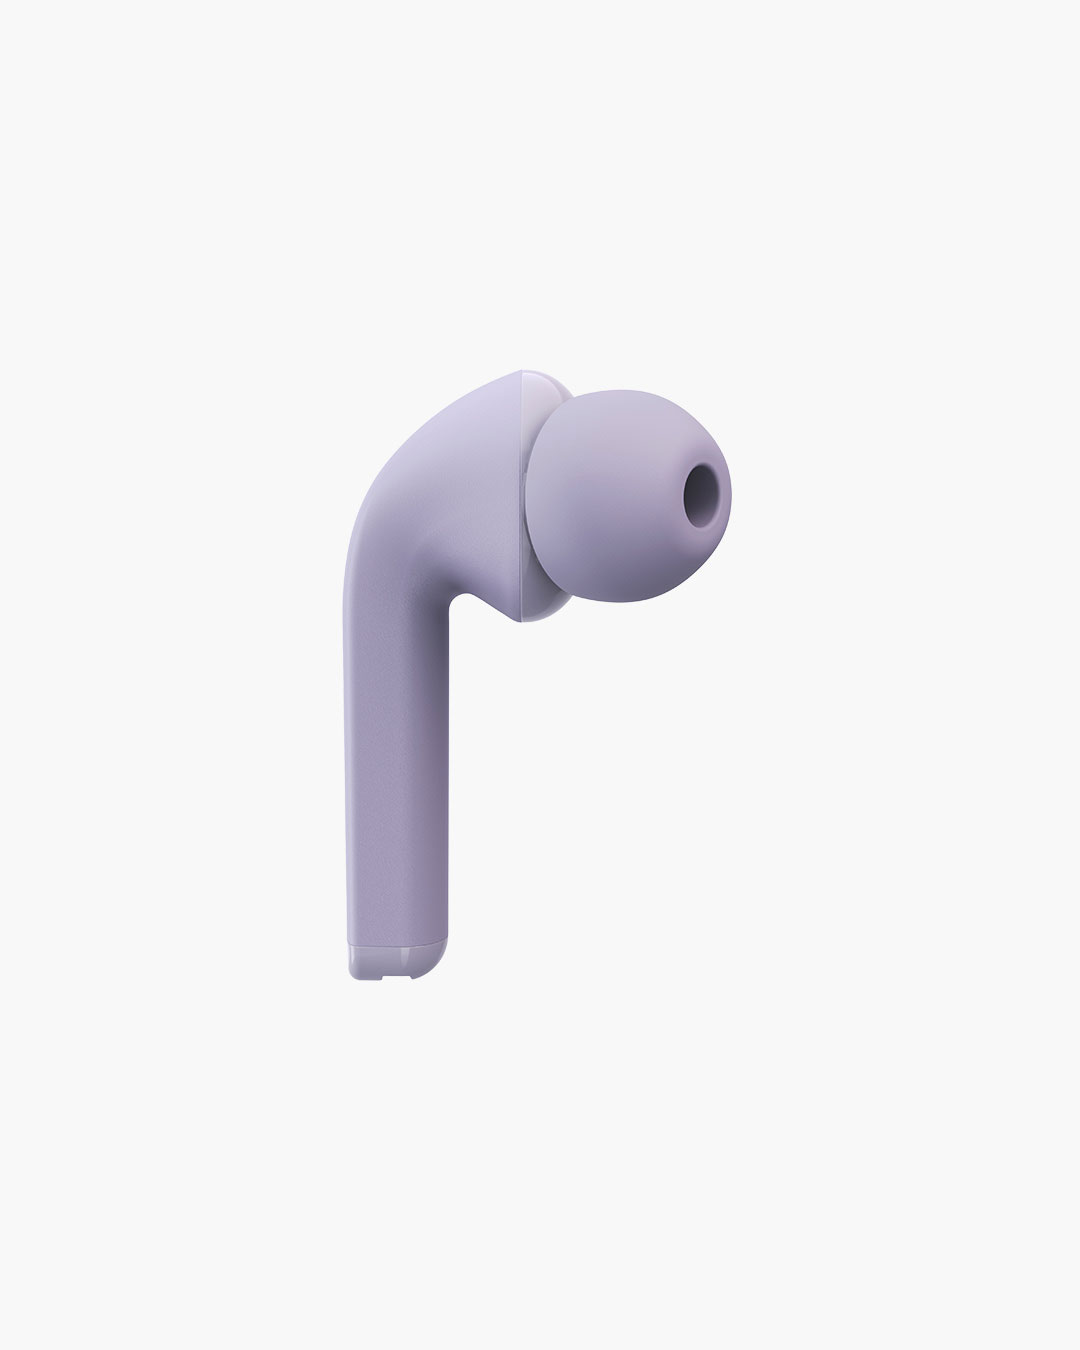 Fresh 'n Rebel - Twins 1 - True Wireless In-ear headphones with ear tip - Dreamy Lilac